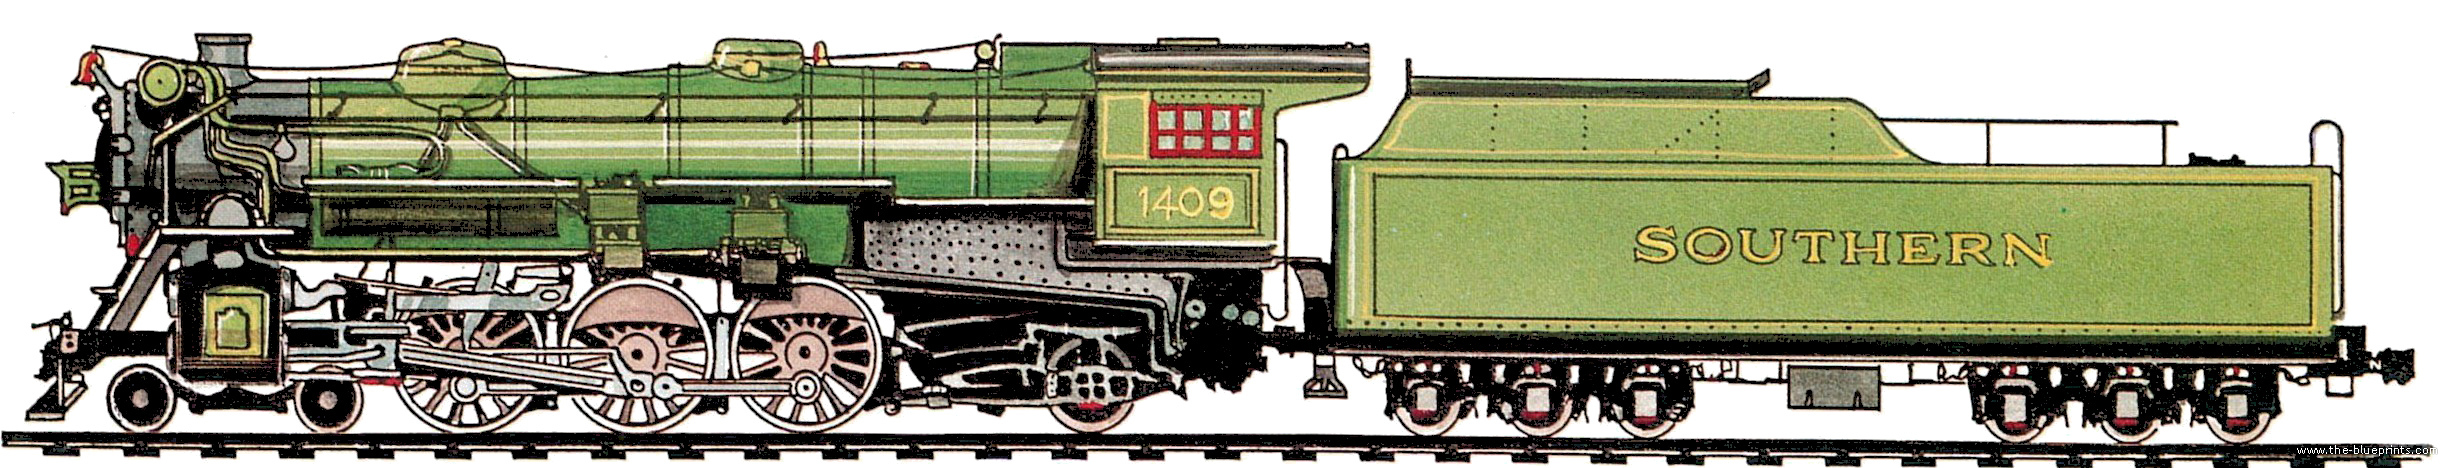 sr-ps-4-class-4-6-2-1926.jpg